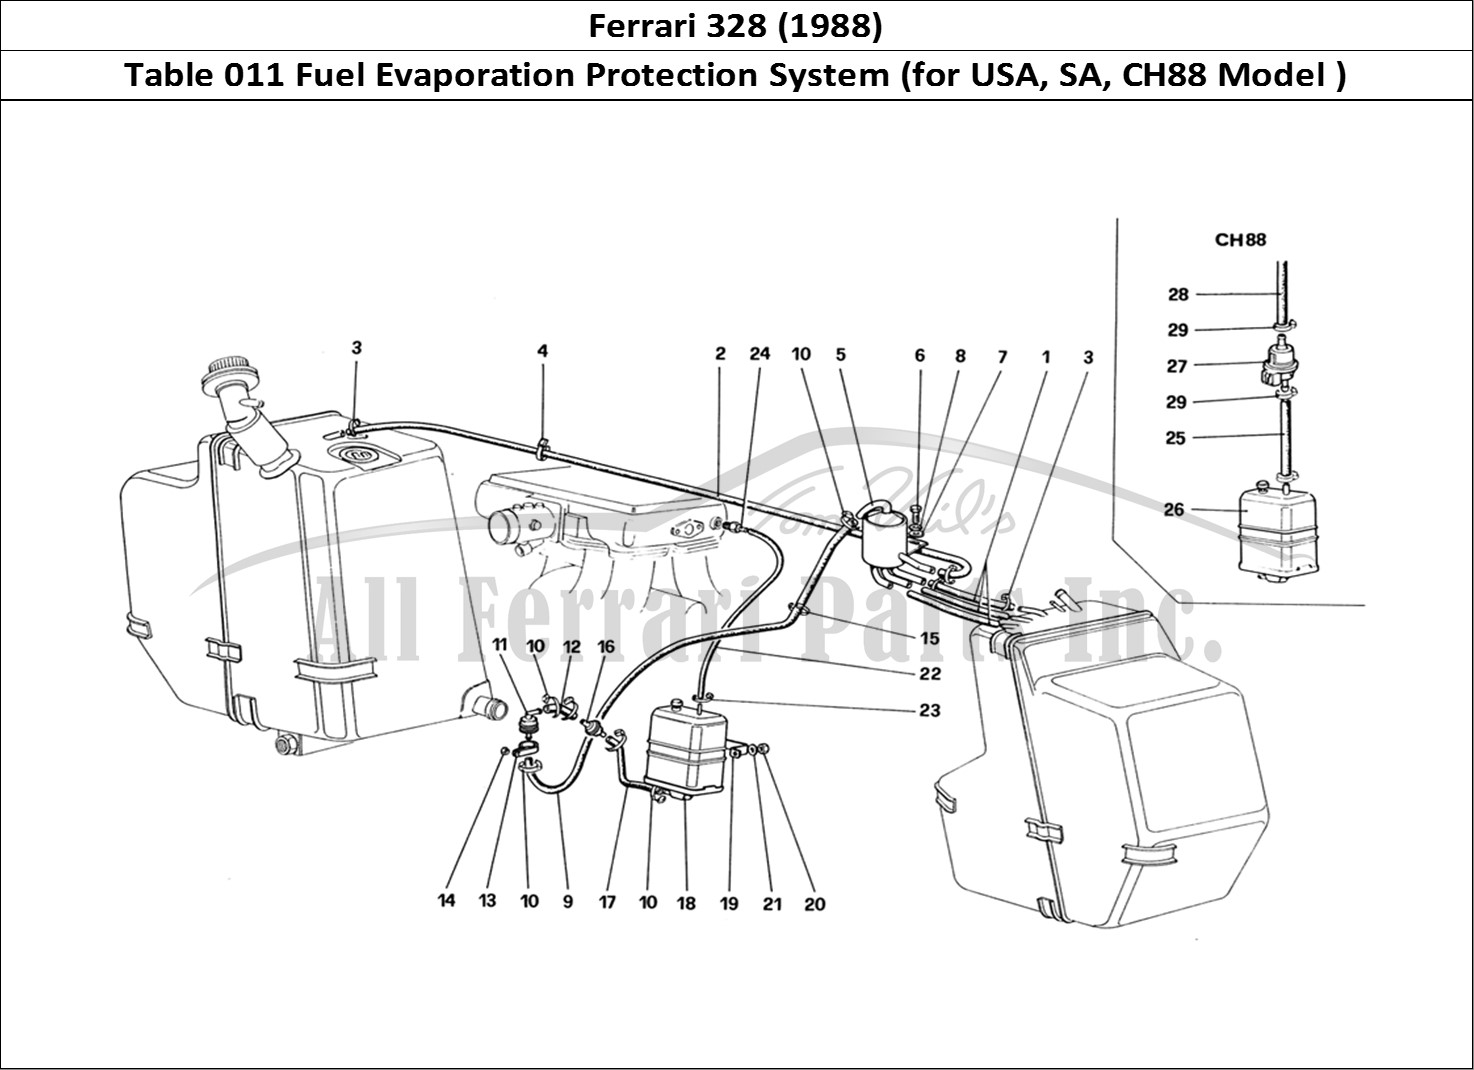 Ferrari Parts Ferrari 328 (1988) Page 011 Antievaporative Emission